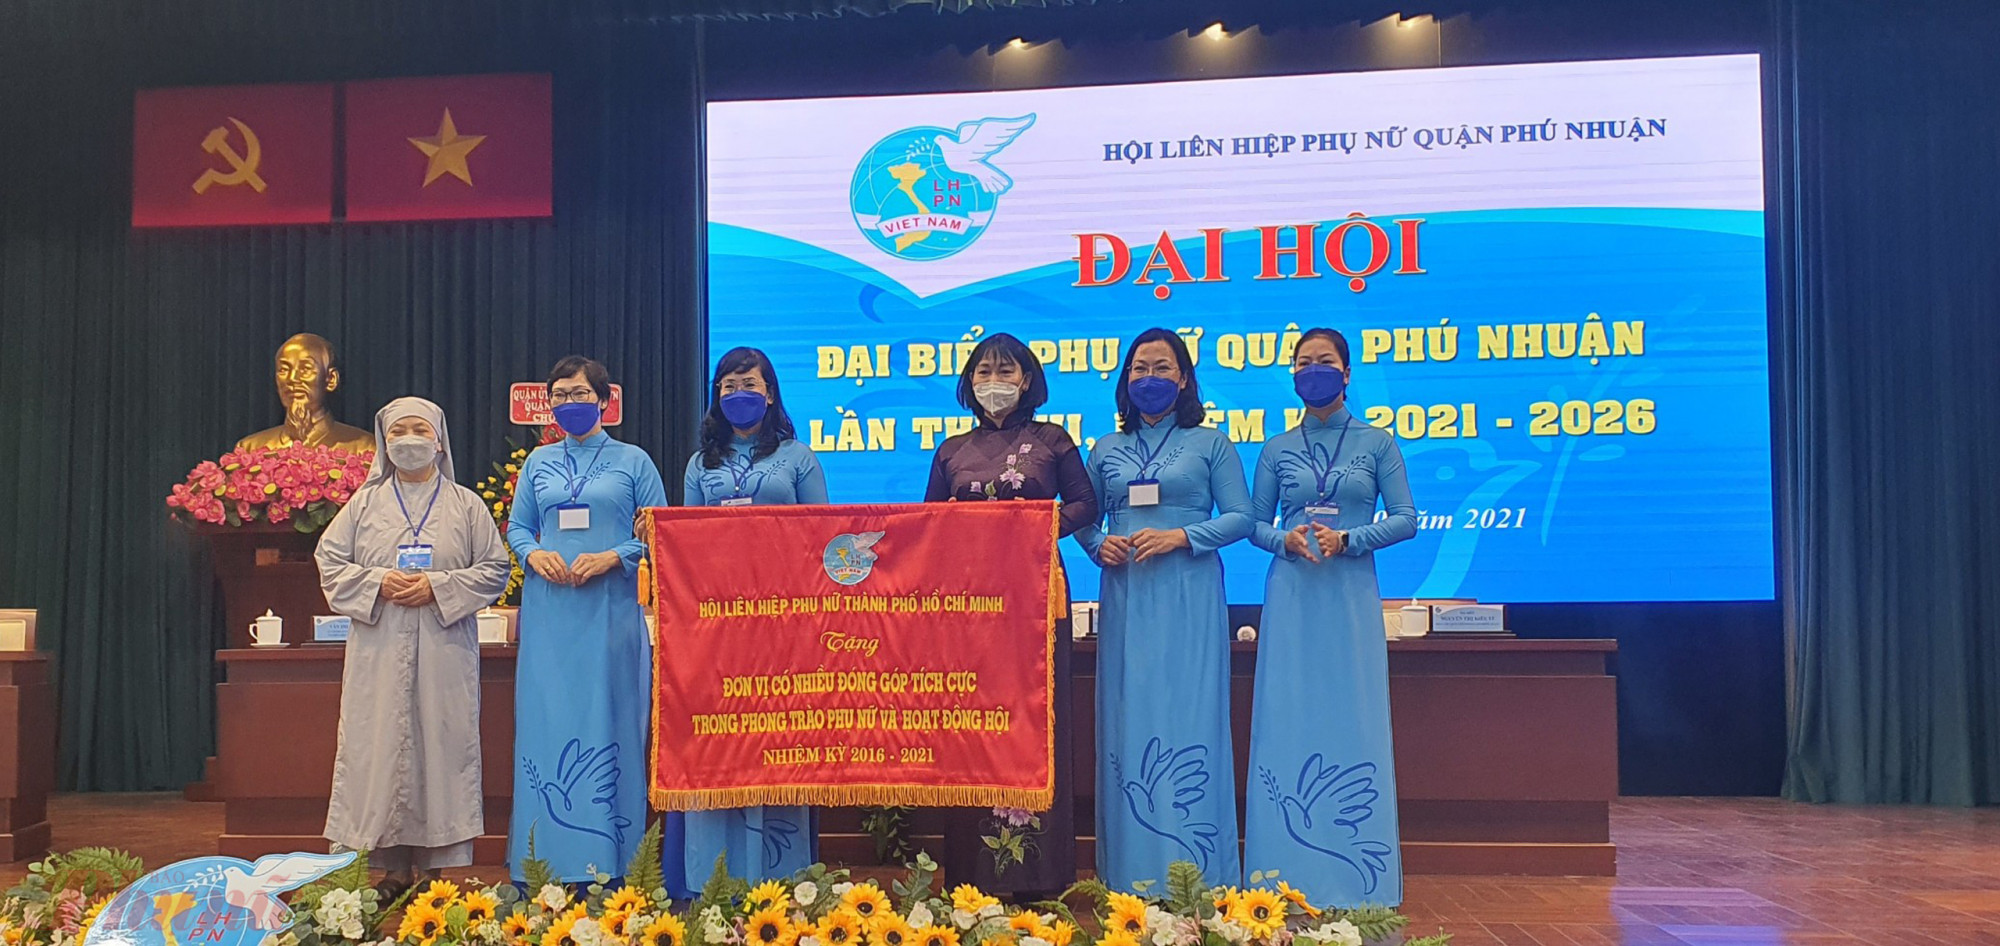 Hội LHPN TPHCM trao cờ biểu dương đến Hội LHPN quận Phú Nhuận - đơn vị có nhiều đóng góp tích cực trong phong trào hoạt phụ nữ và hoạt động Hội. 